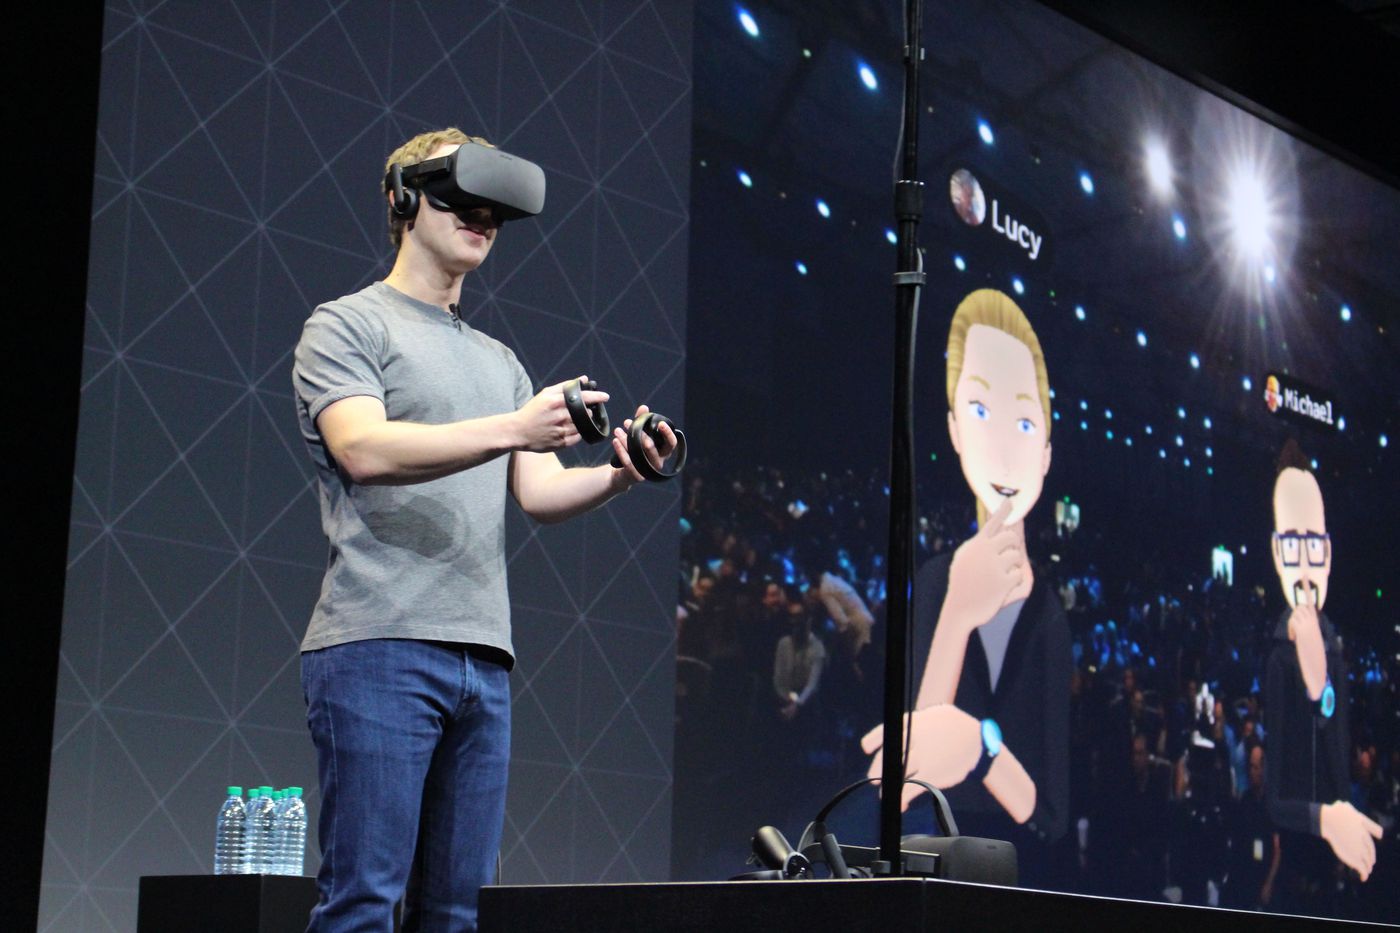 Meta a oprit dezvoltarea unui sistem de operare pentru VR și AR